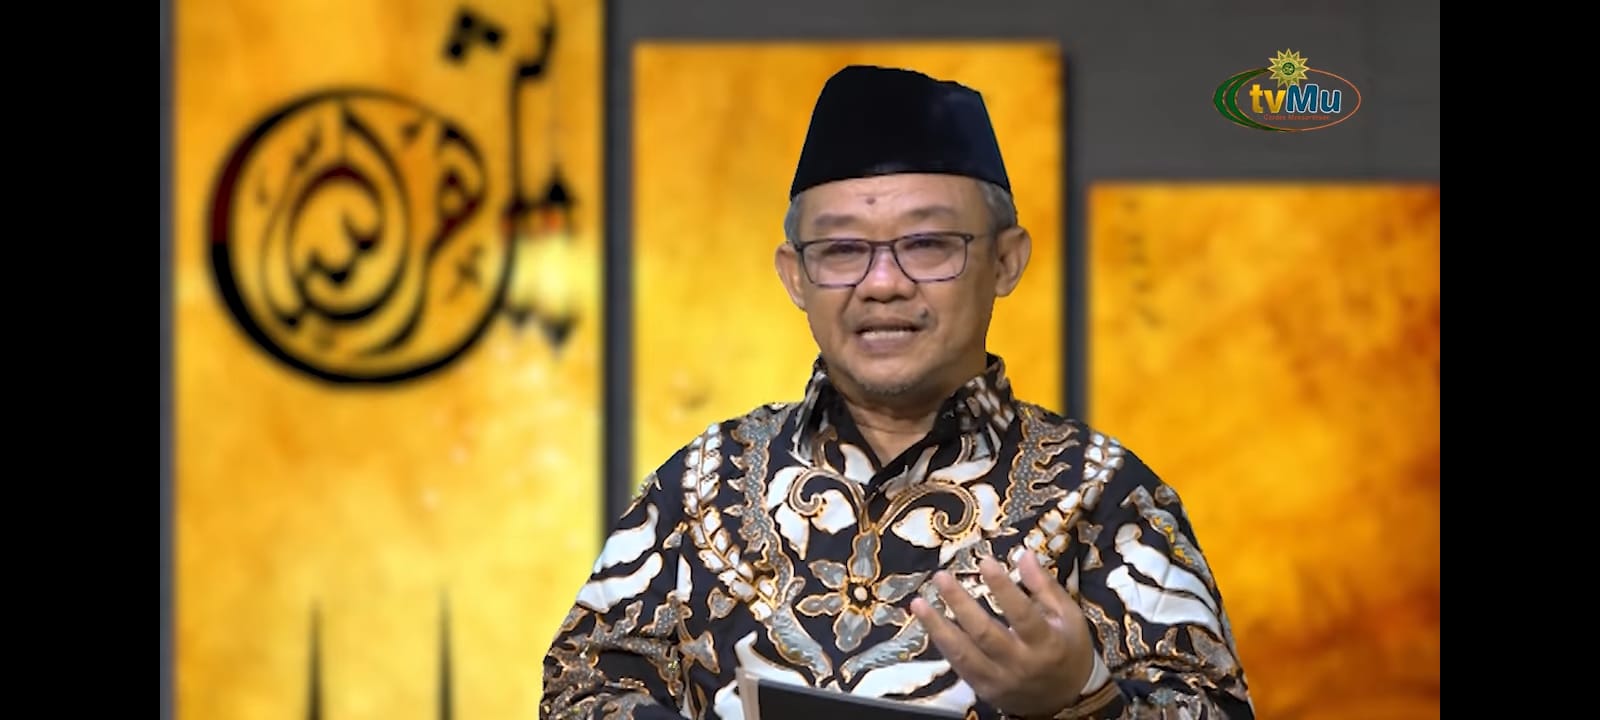 PP Muhammadiyah kritik larangan bukber pejabat ala Jokowi